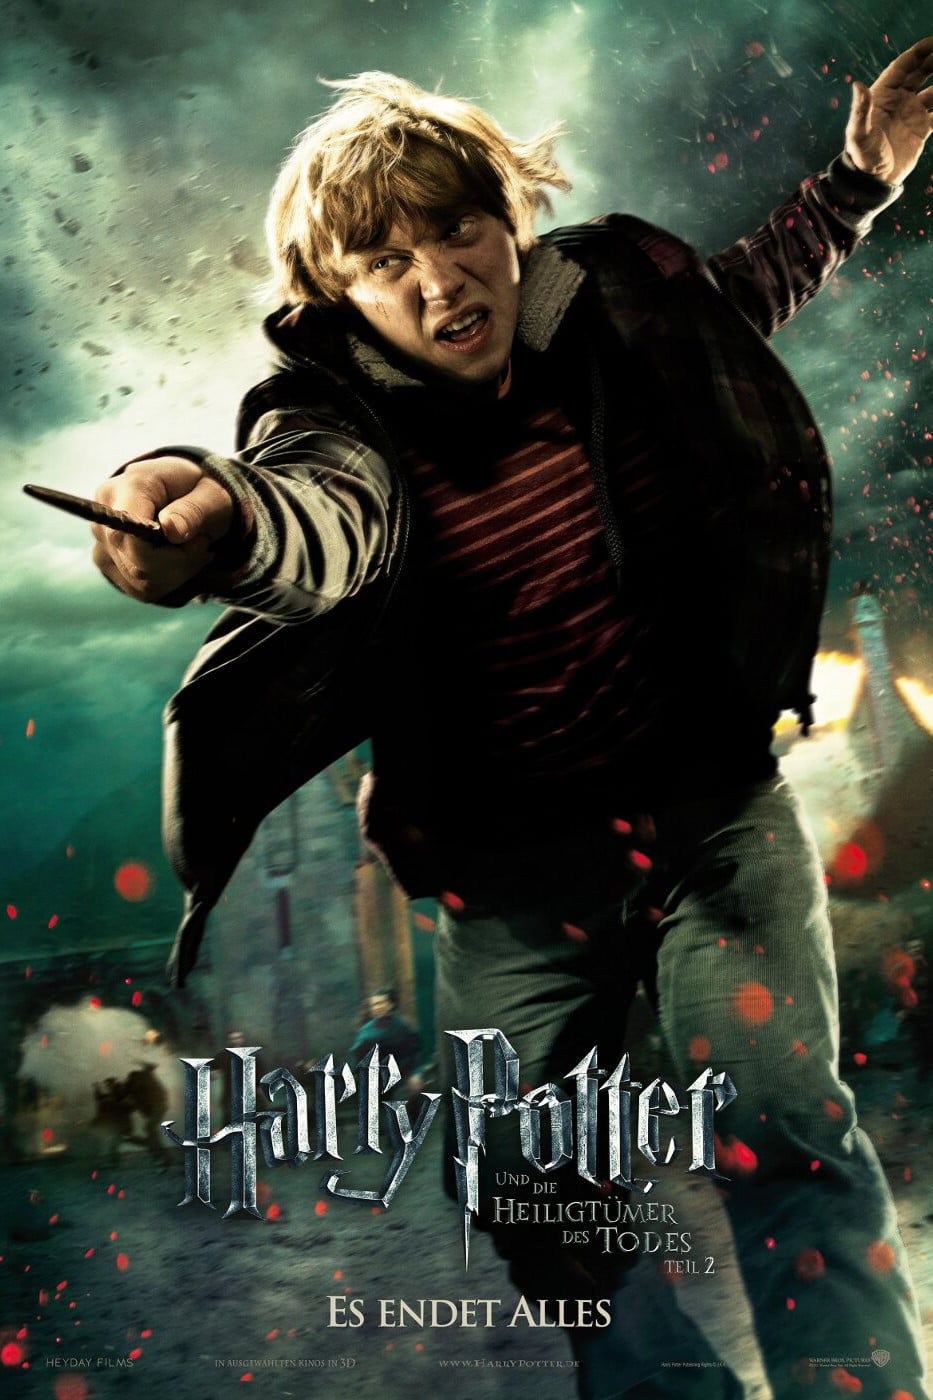 Plakat von "Harry Potter und die Heiligtümer des Todes - Teil 2"